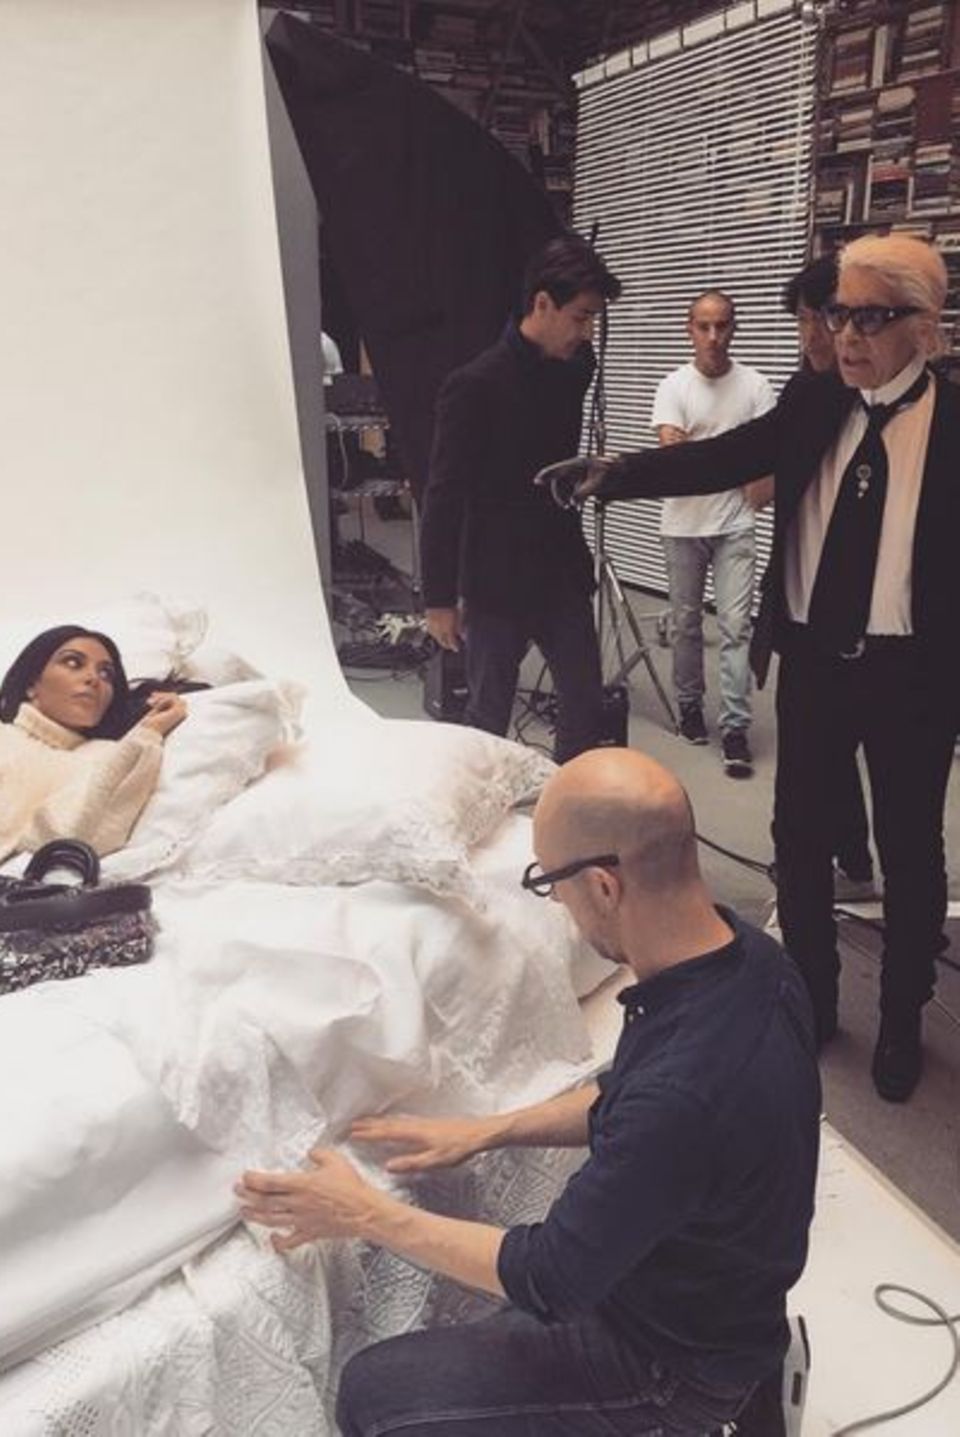 Karl Lagerfeld ist noch nicht zufrieden: Der Designer scheint mit der Pose von Kim Kardashian noch nicht ganz zufrieden zu sein.